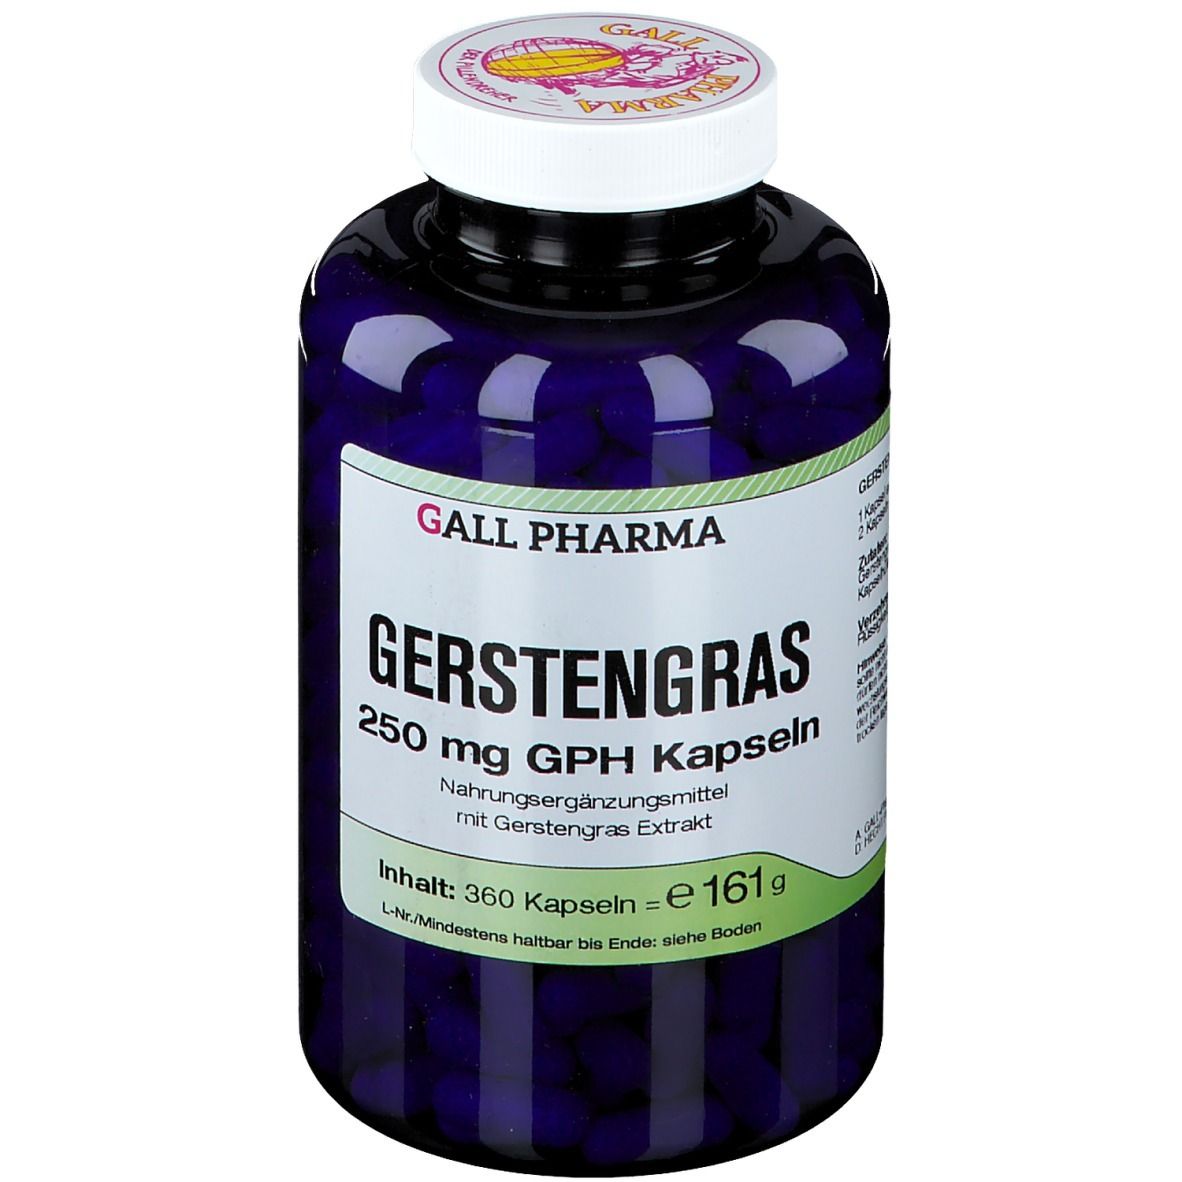 Gall Pharma Gerstengras 250 mg GPH Kapseln